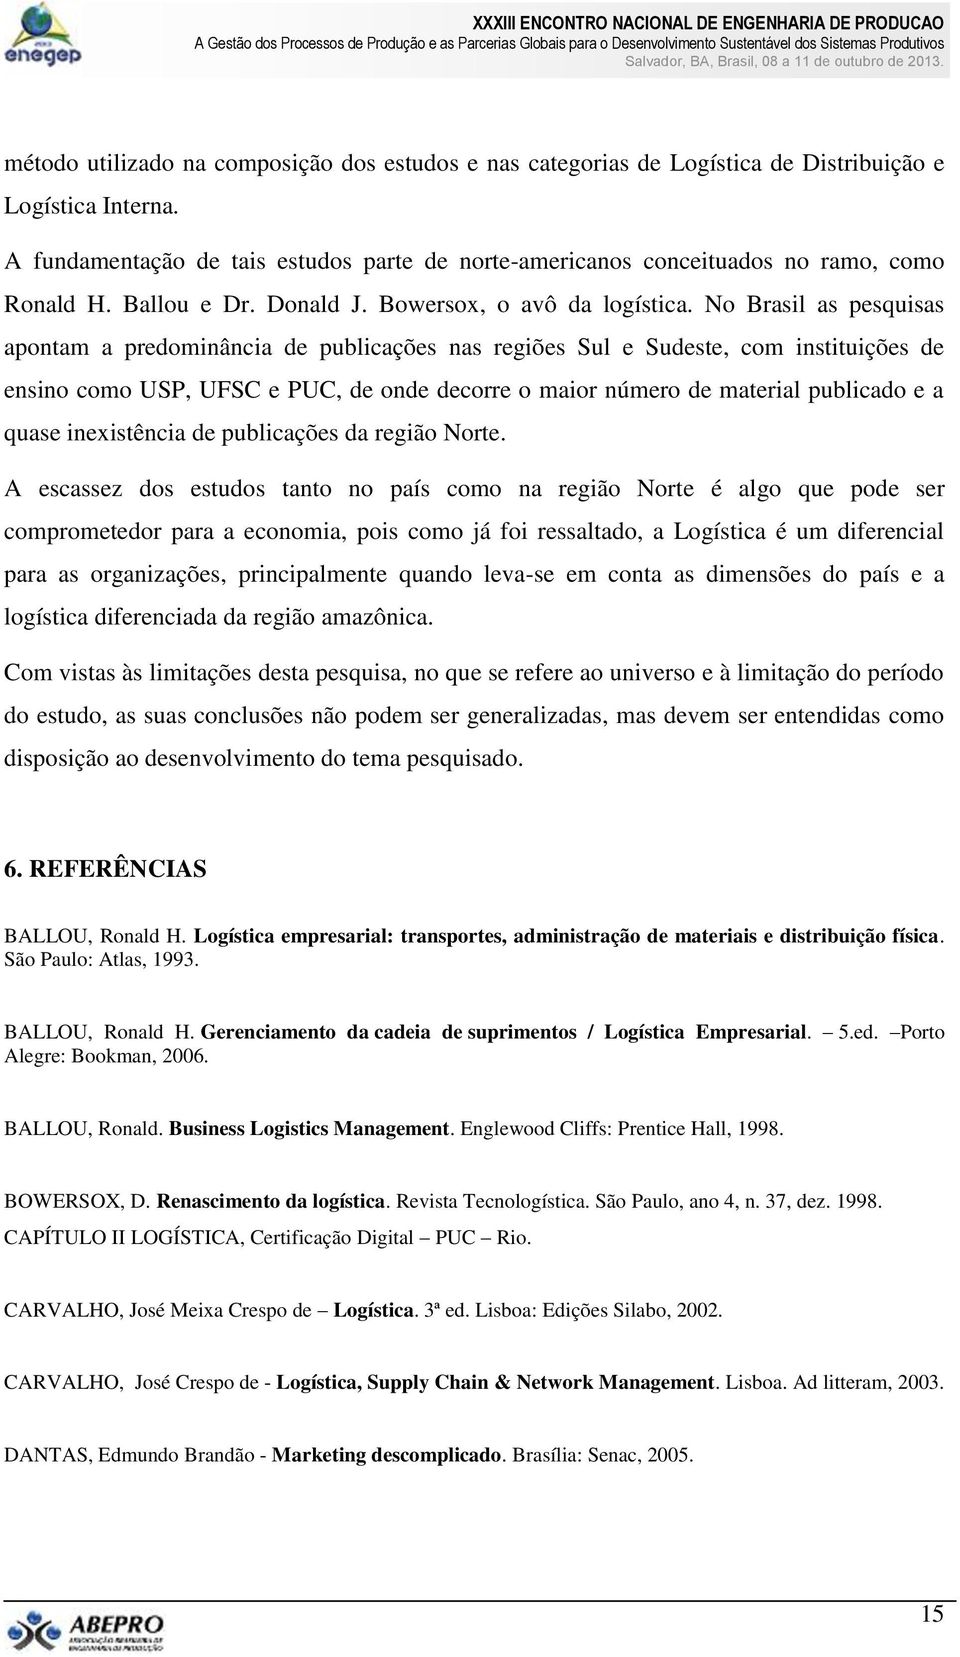 No Brasil as pesquisas apontam a predominância de publicações nas regiões Sul e Sudeste, com instituições de ensino como USP, UFSC e PUC, de onde decorre o maior número de material publicado e a